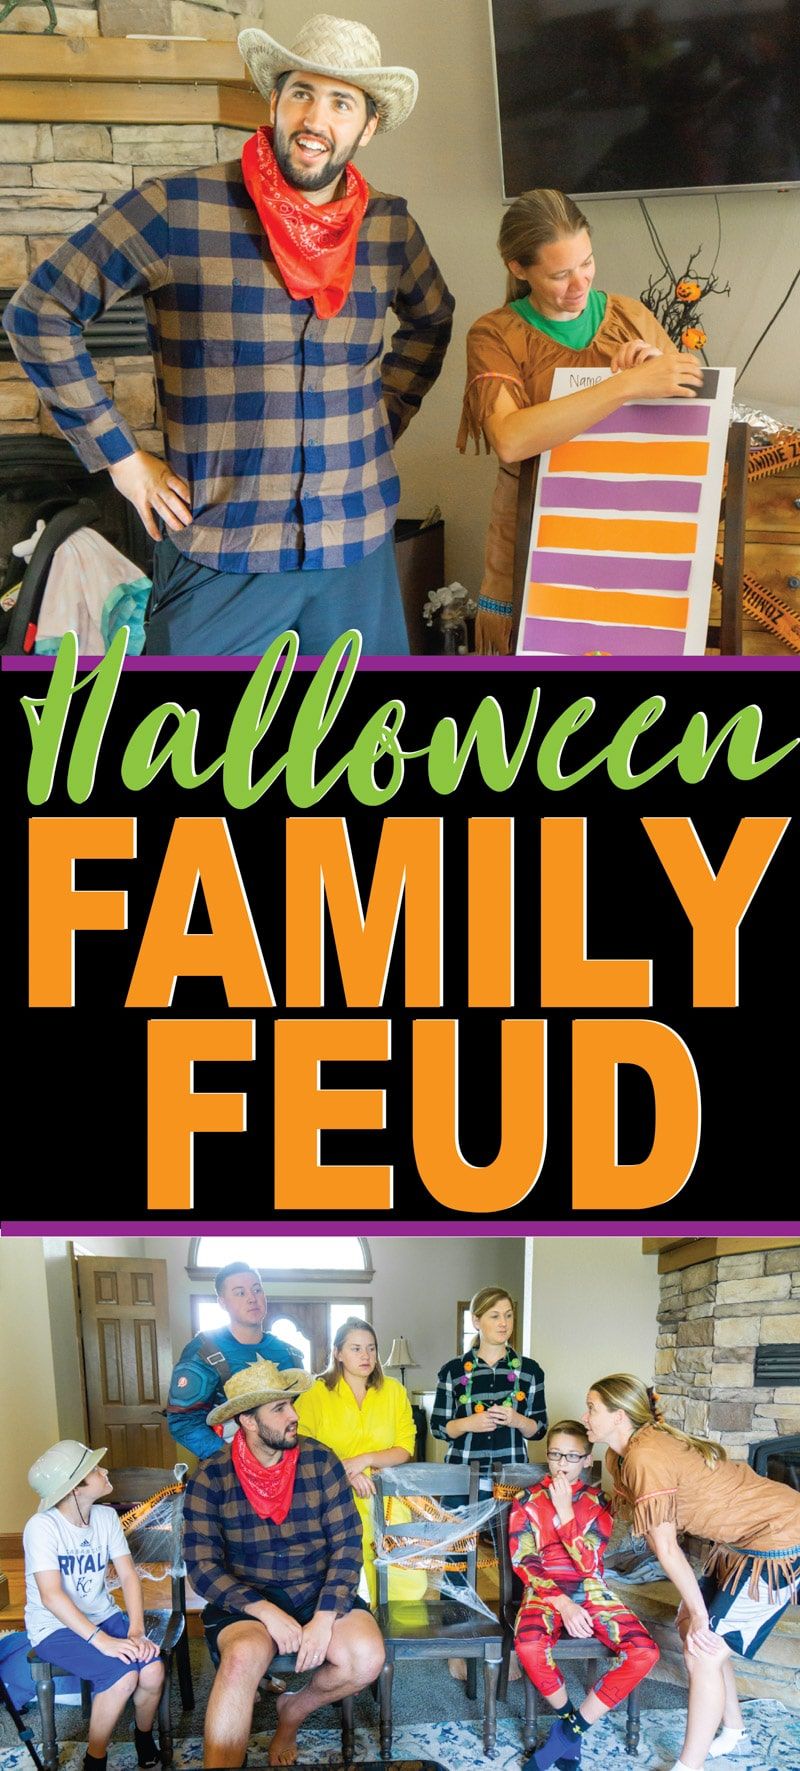 DIY Halloween rodinný spor doplnený vtipnými otázkami pre deti i dospelých! Ideálne na halloweensku párty alebo len na halloweensku hru, ktorú si môžete zahrať s rodinou! Jedna z najzábavnejších halloweenských hier!